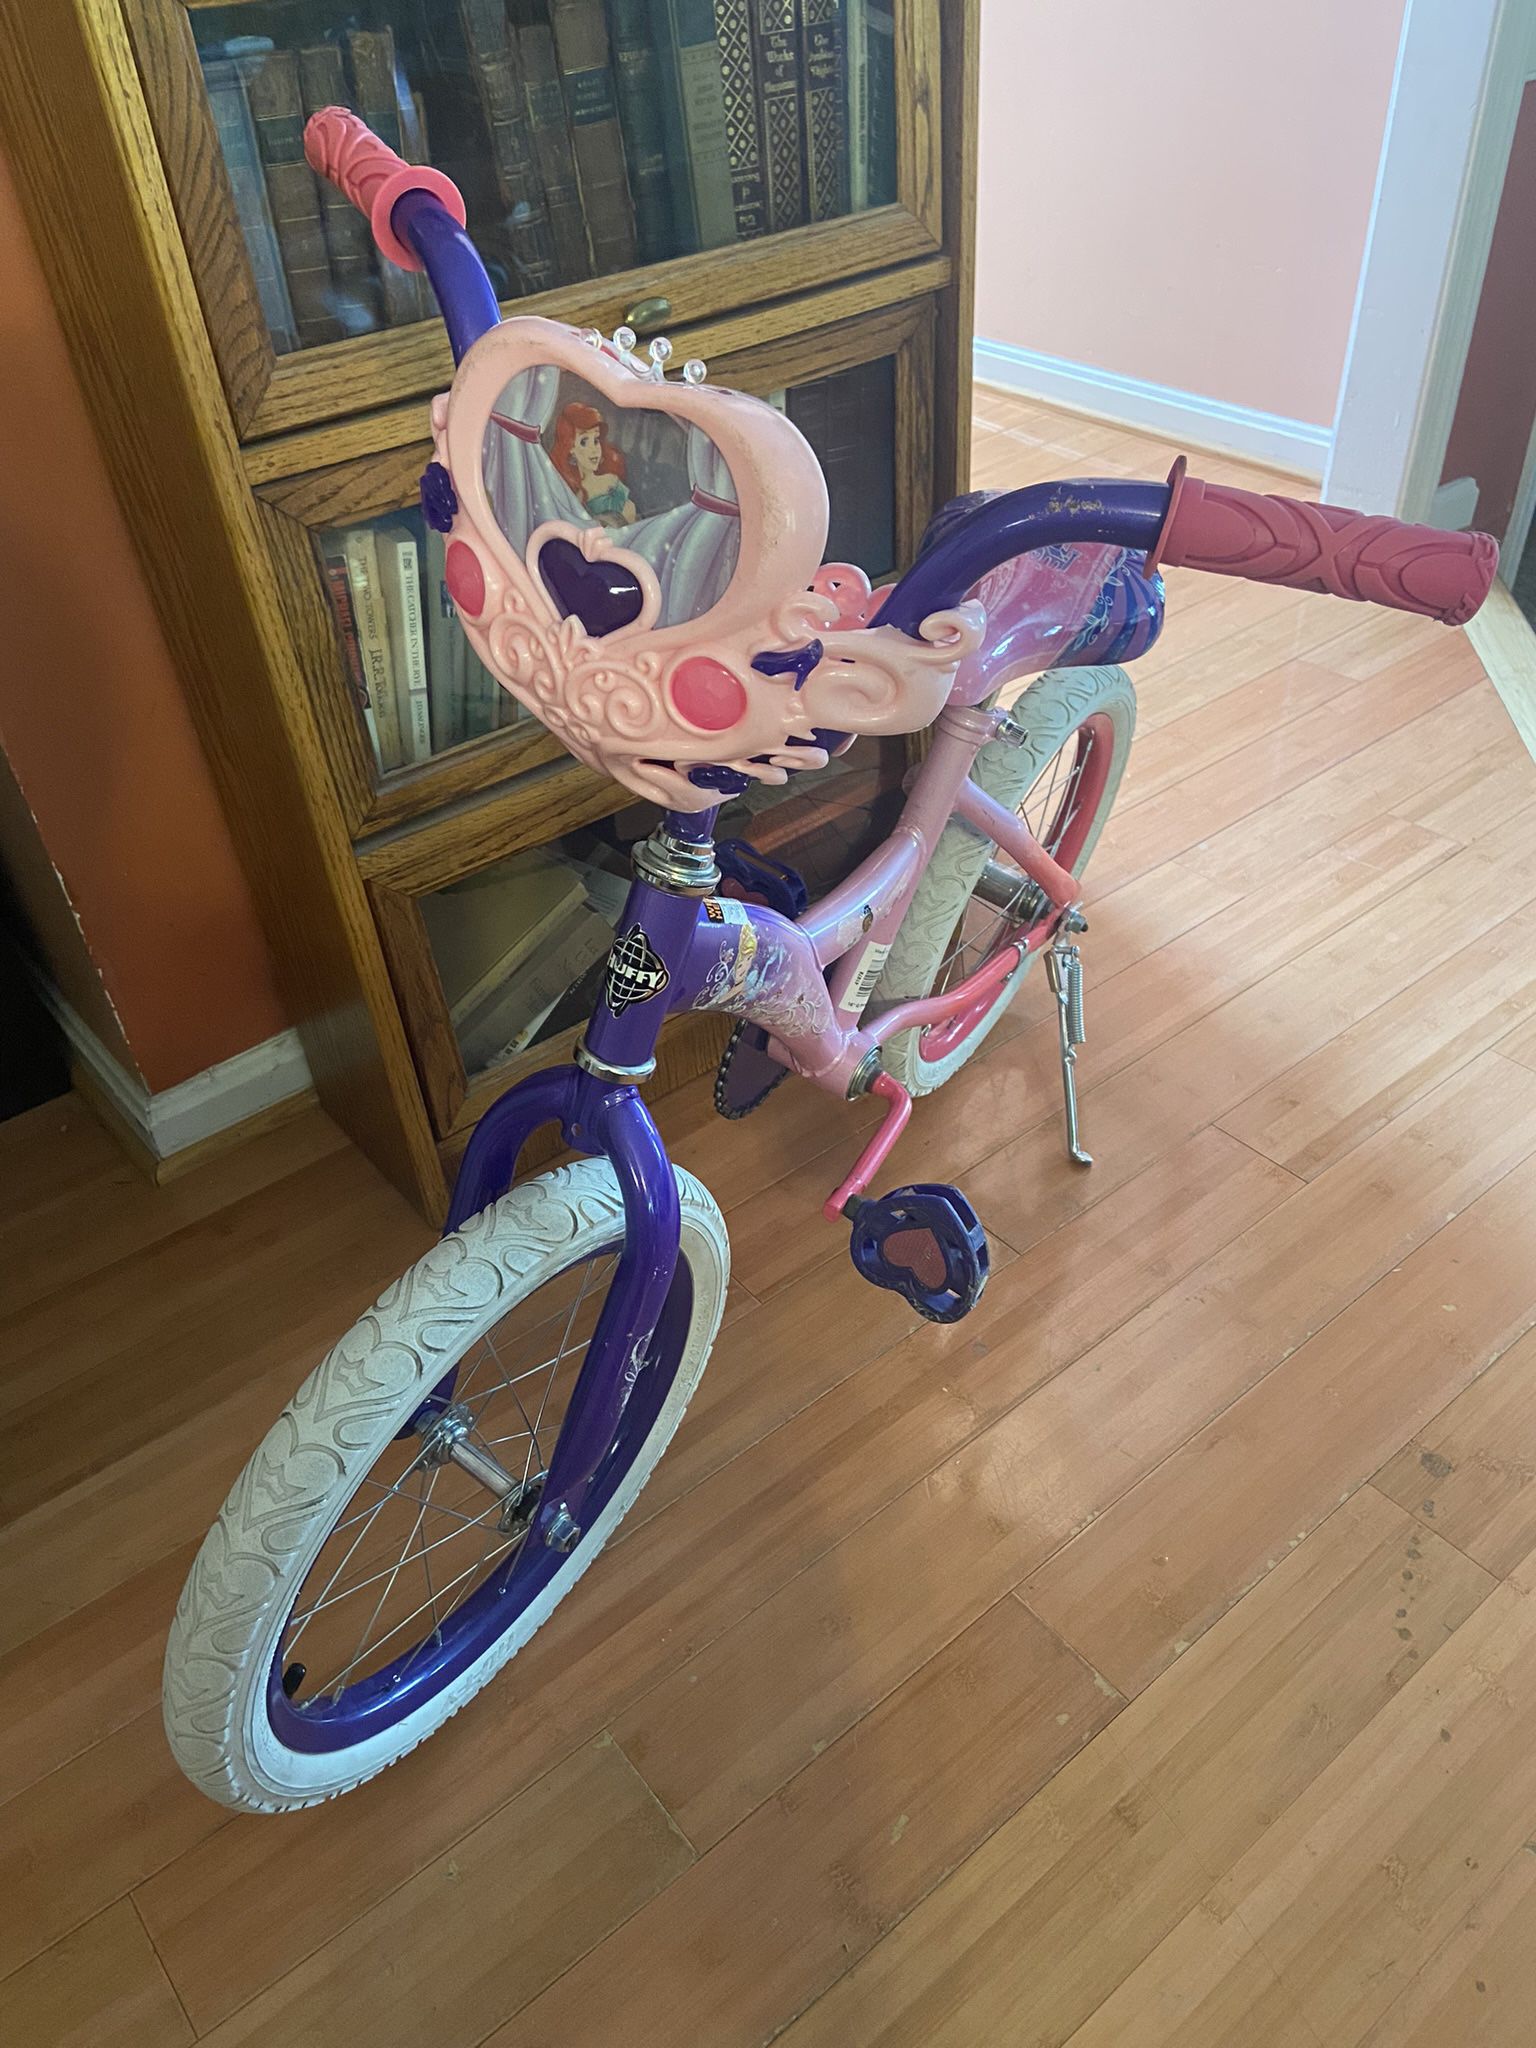 Disney Princess Bike